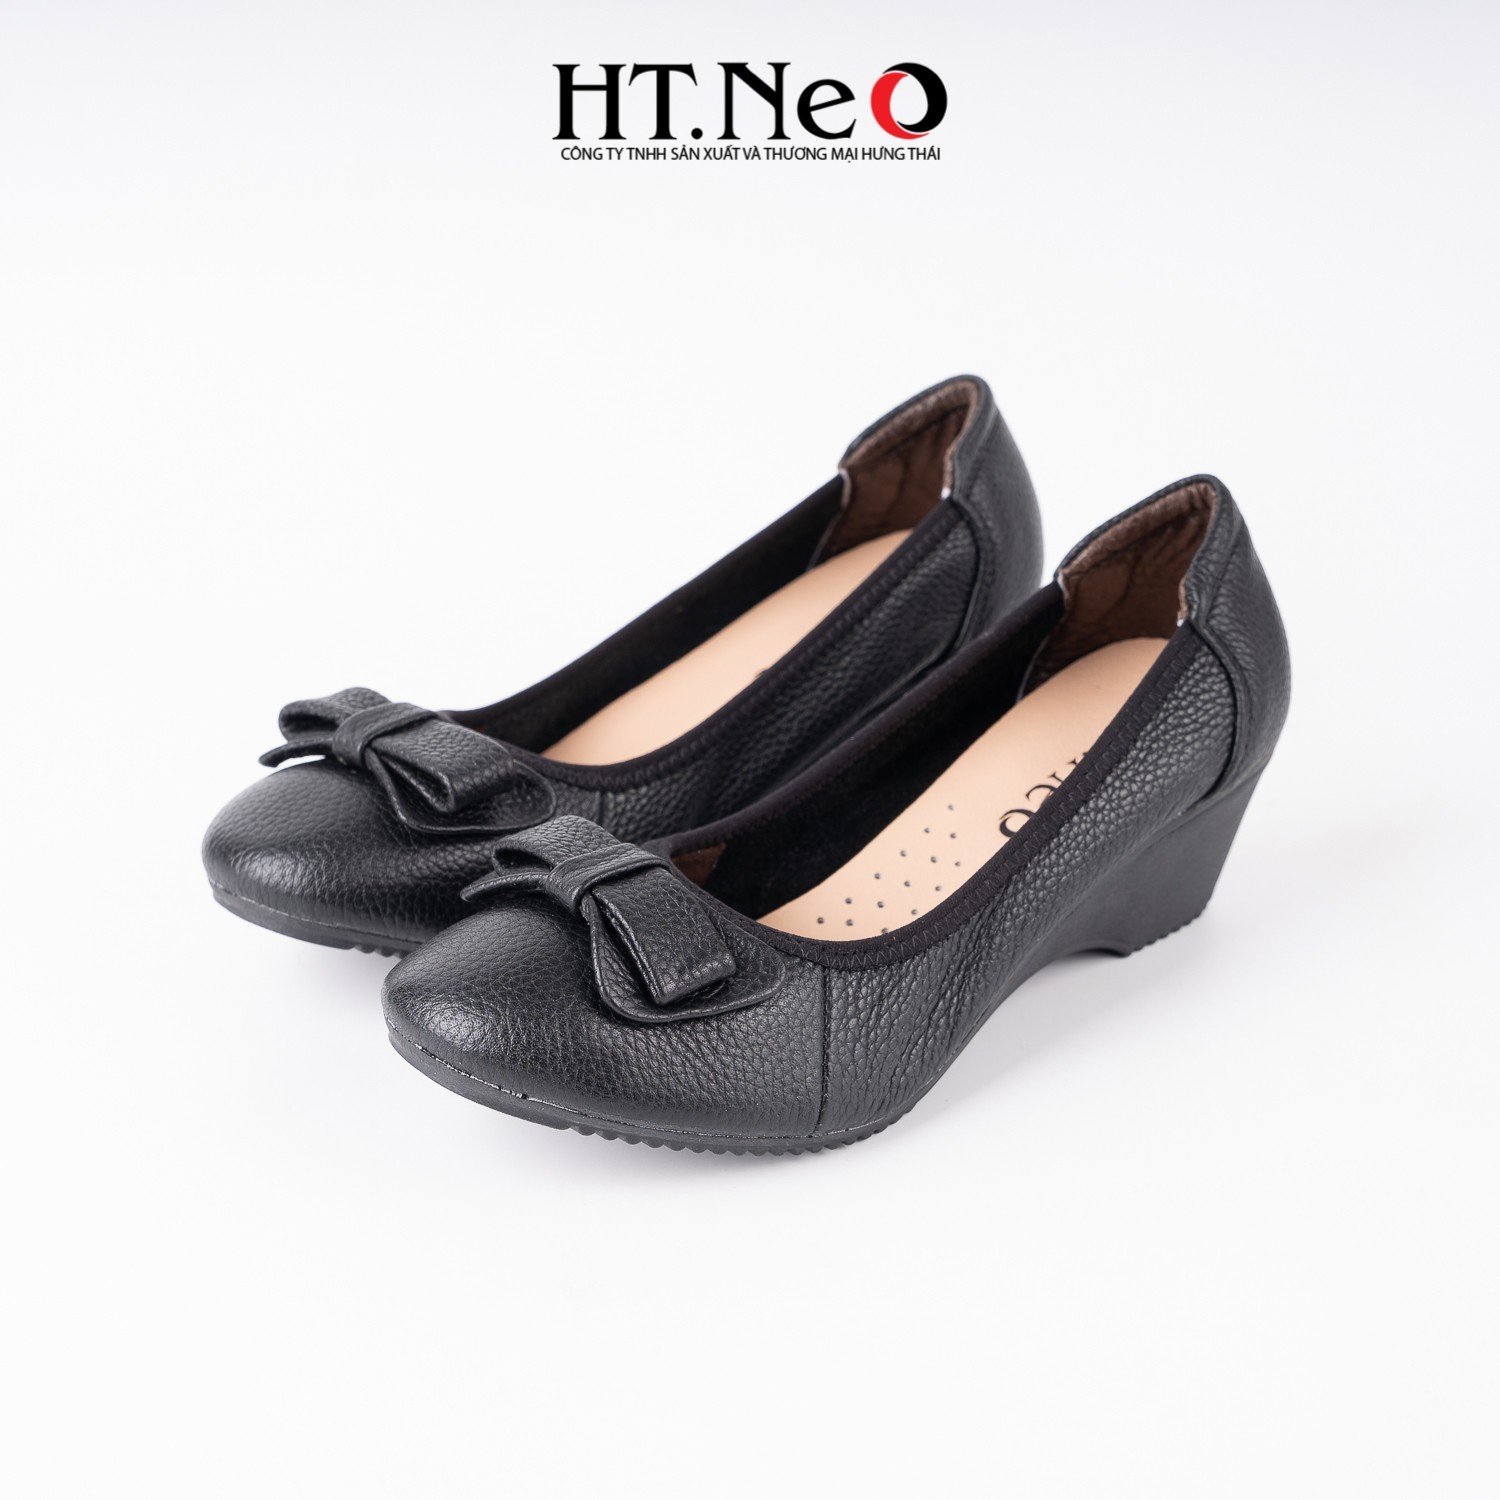 Giày nữ, giày đế xuồng 3p được thiết kế với da sần, viền chung, được tổ điểm thêm chiếc nơ xinh xắn trên đôi giày NU91